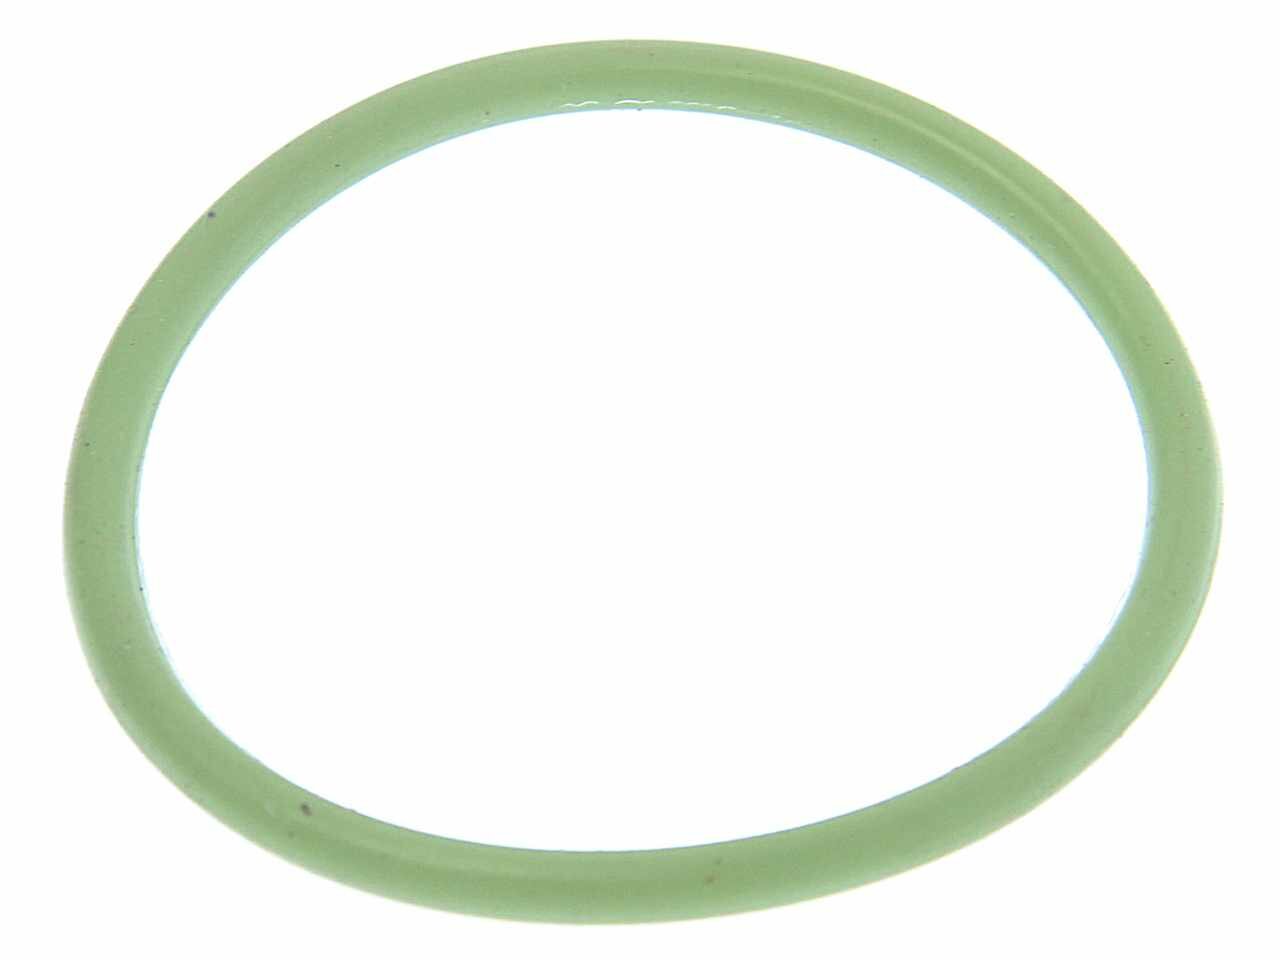 Кольцо ЯМЗ-650.10 уплотнительное трубы теплообменника зеленое силикон, РТР000709, ПТП